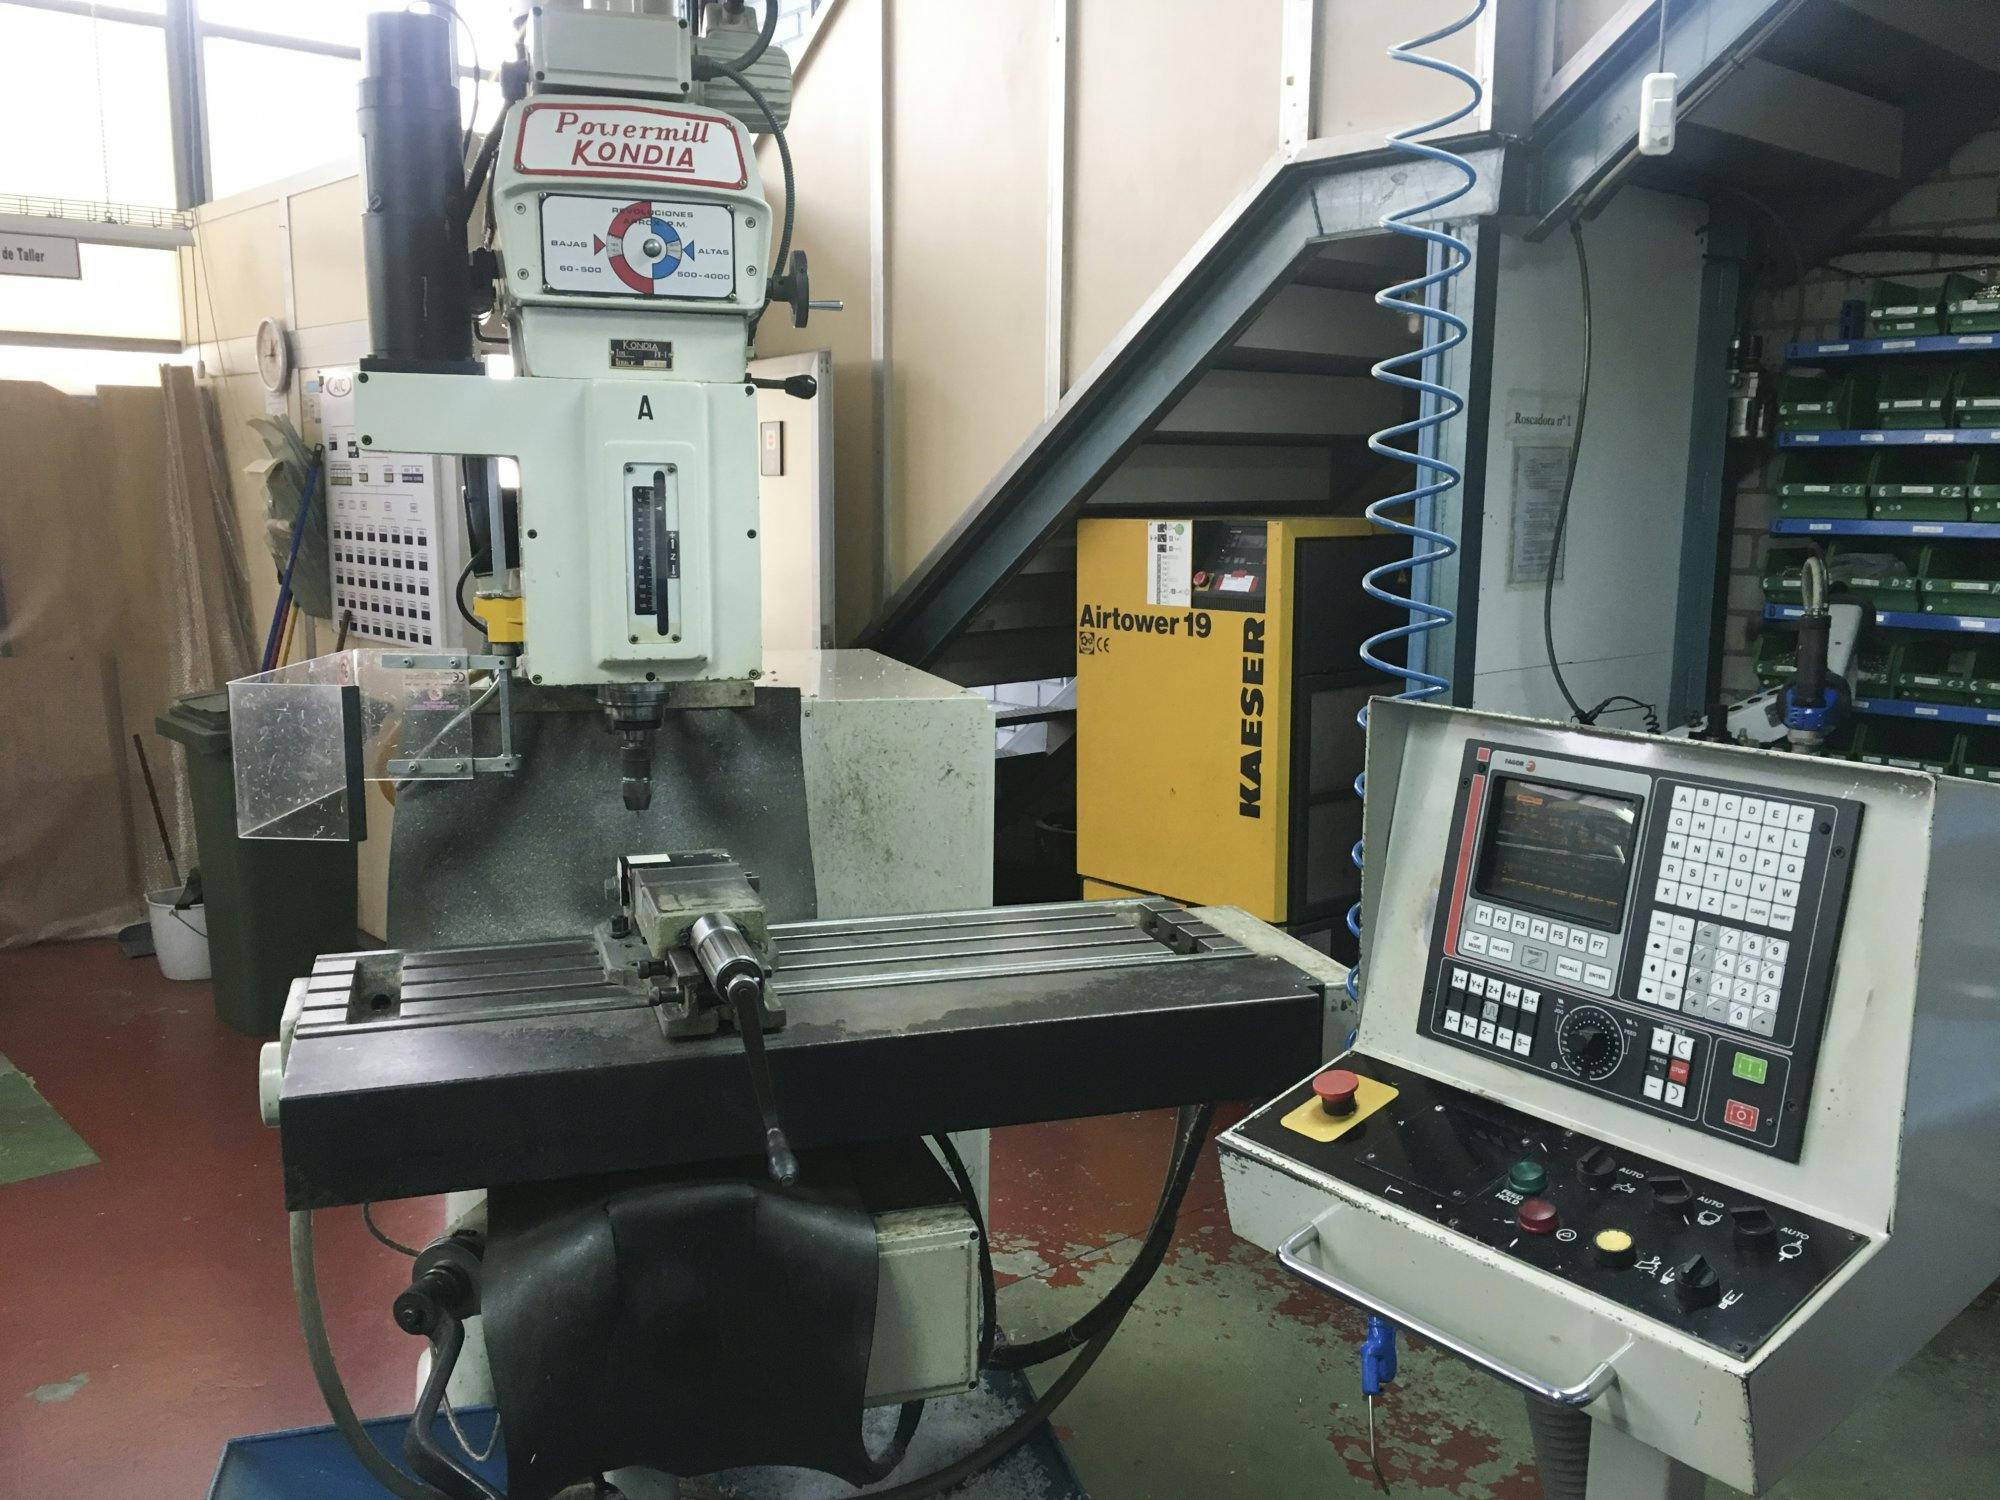 KONDIA-maskinen sedd från vänsterPowermill FV-1 CNC